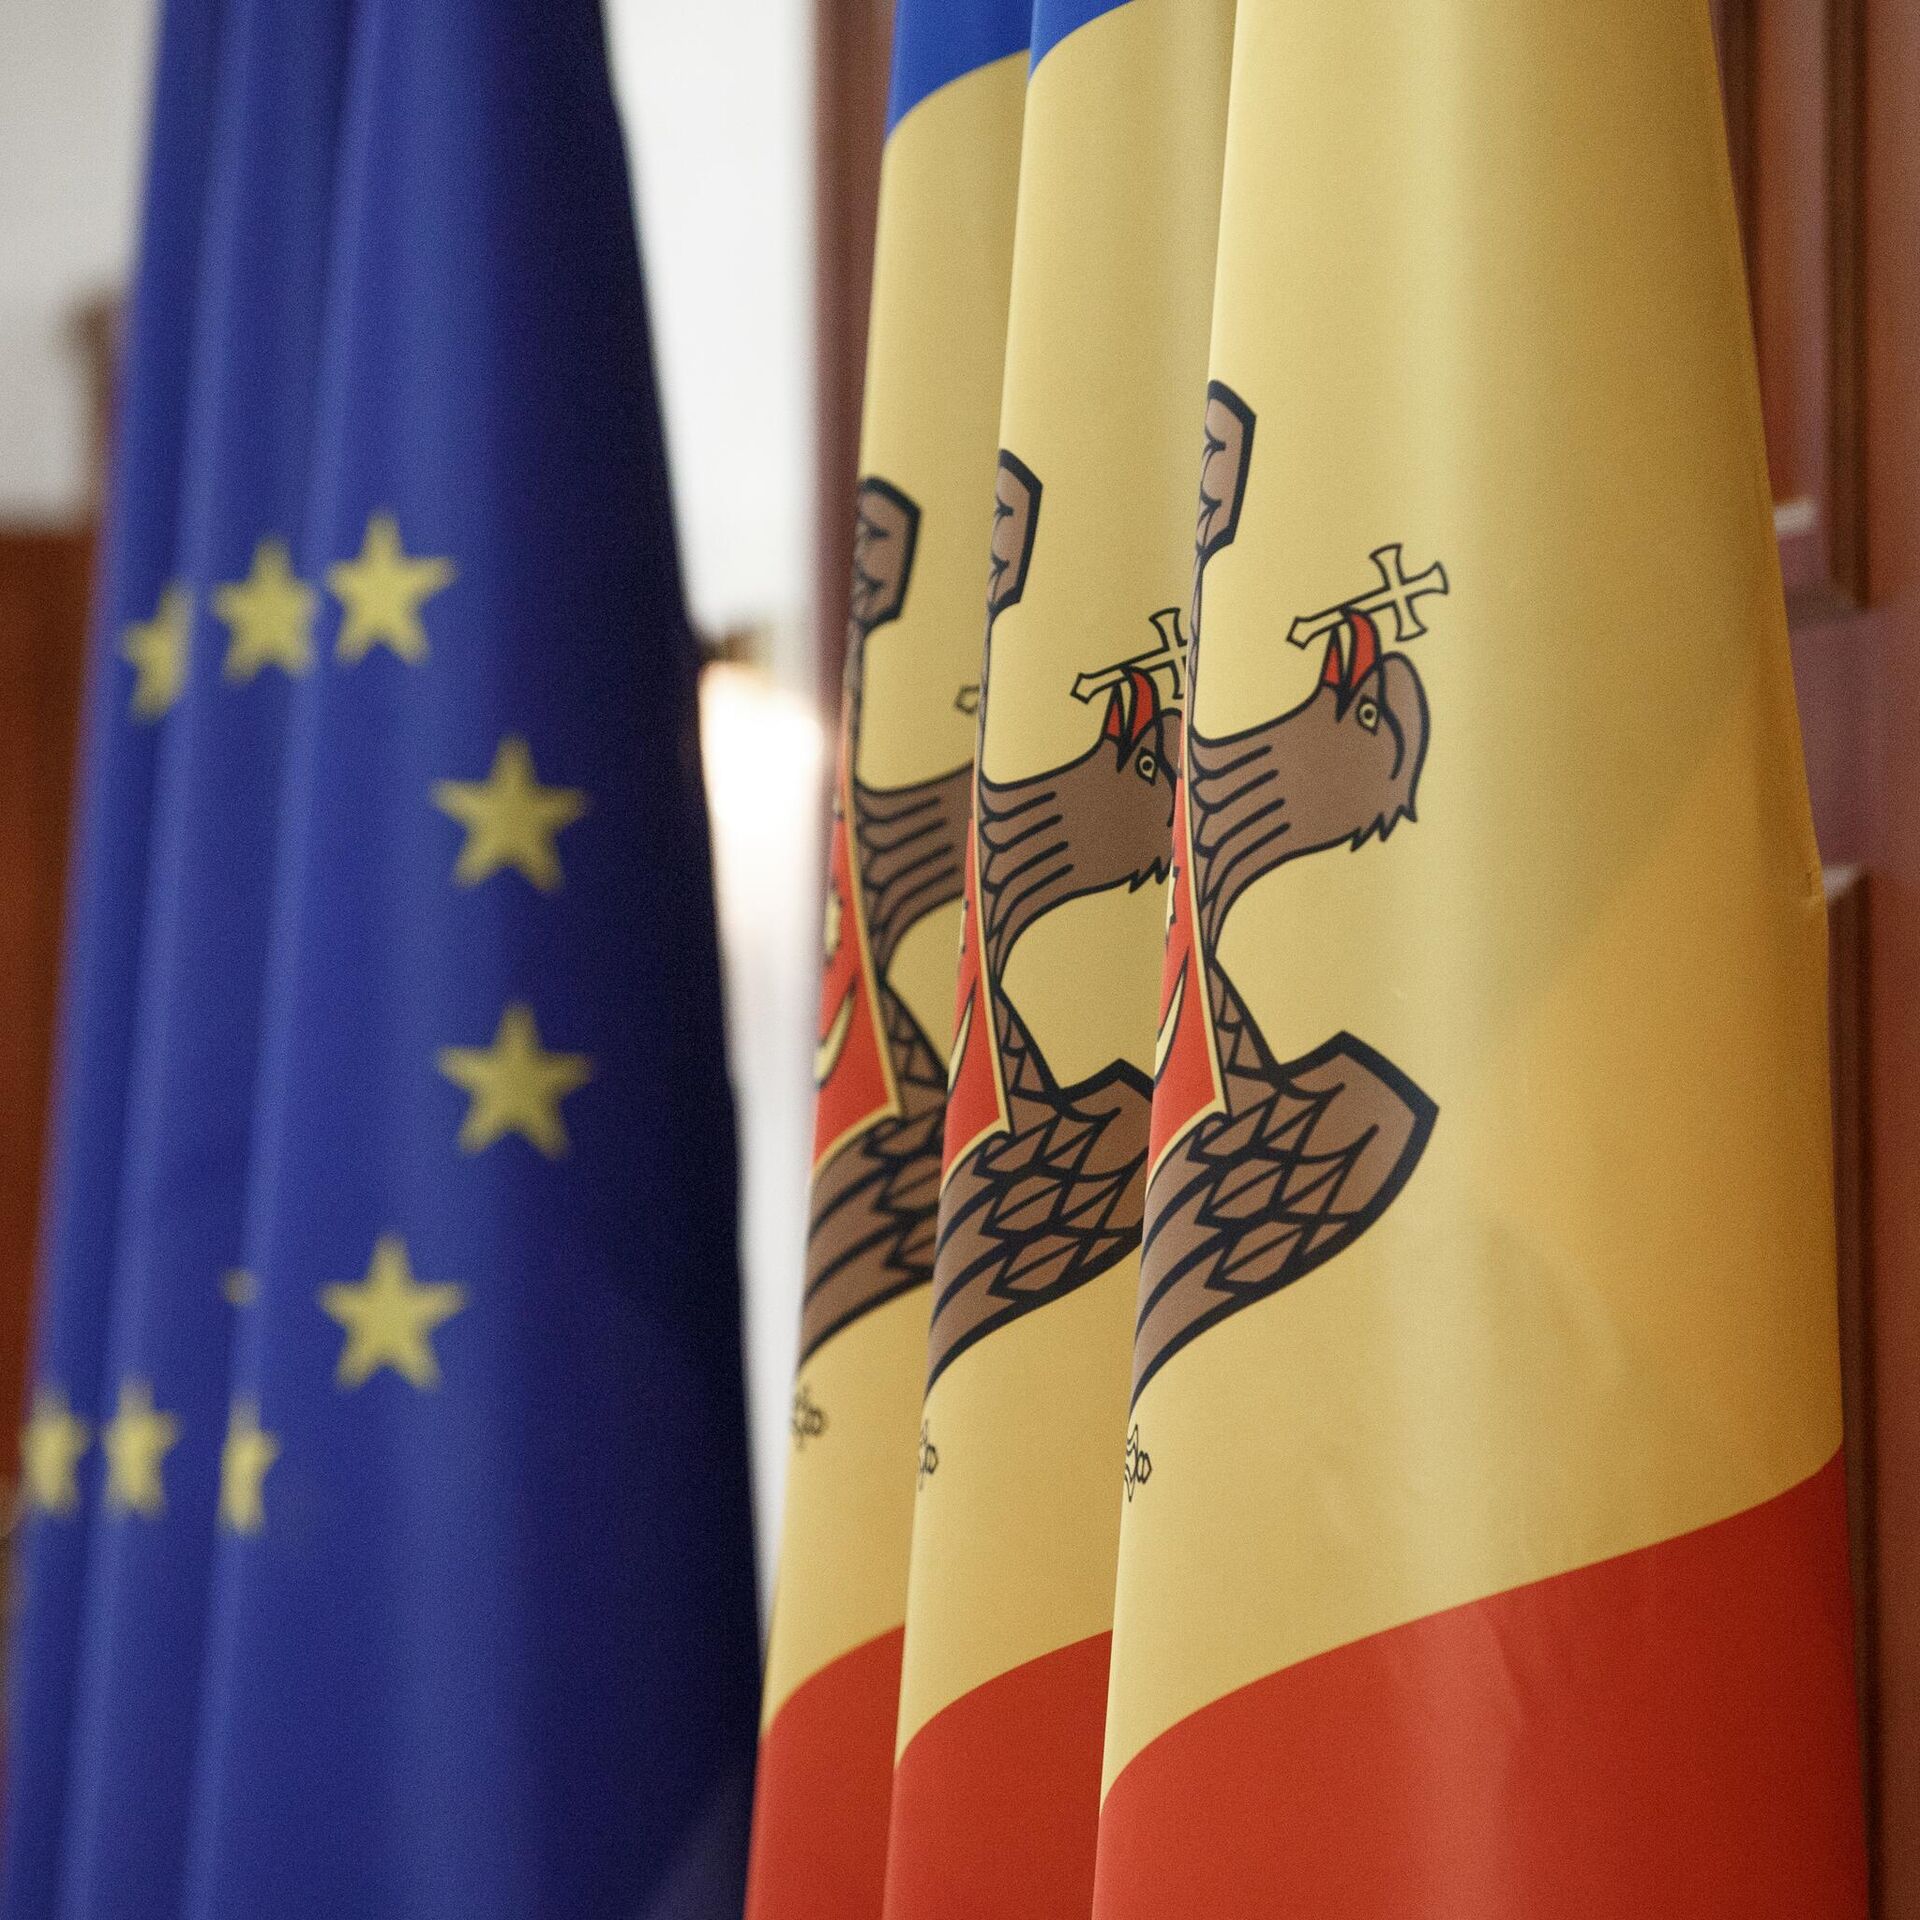 Молдавия присоединится к россии. Флаг Молдовы и Евросоюза. Представитель ЕС на сегодняшний день. Депутат: рекомендации Еврокомиссии выполнены Молдовой на 80%. Россия с Молдовой должна быть.